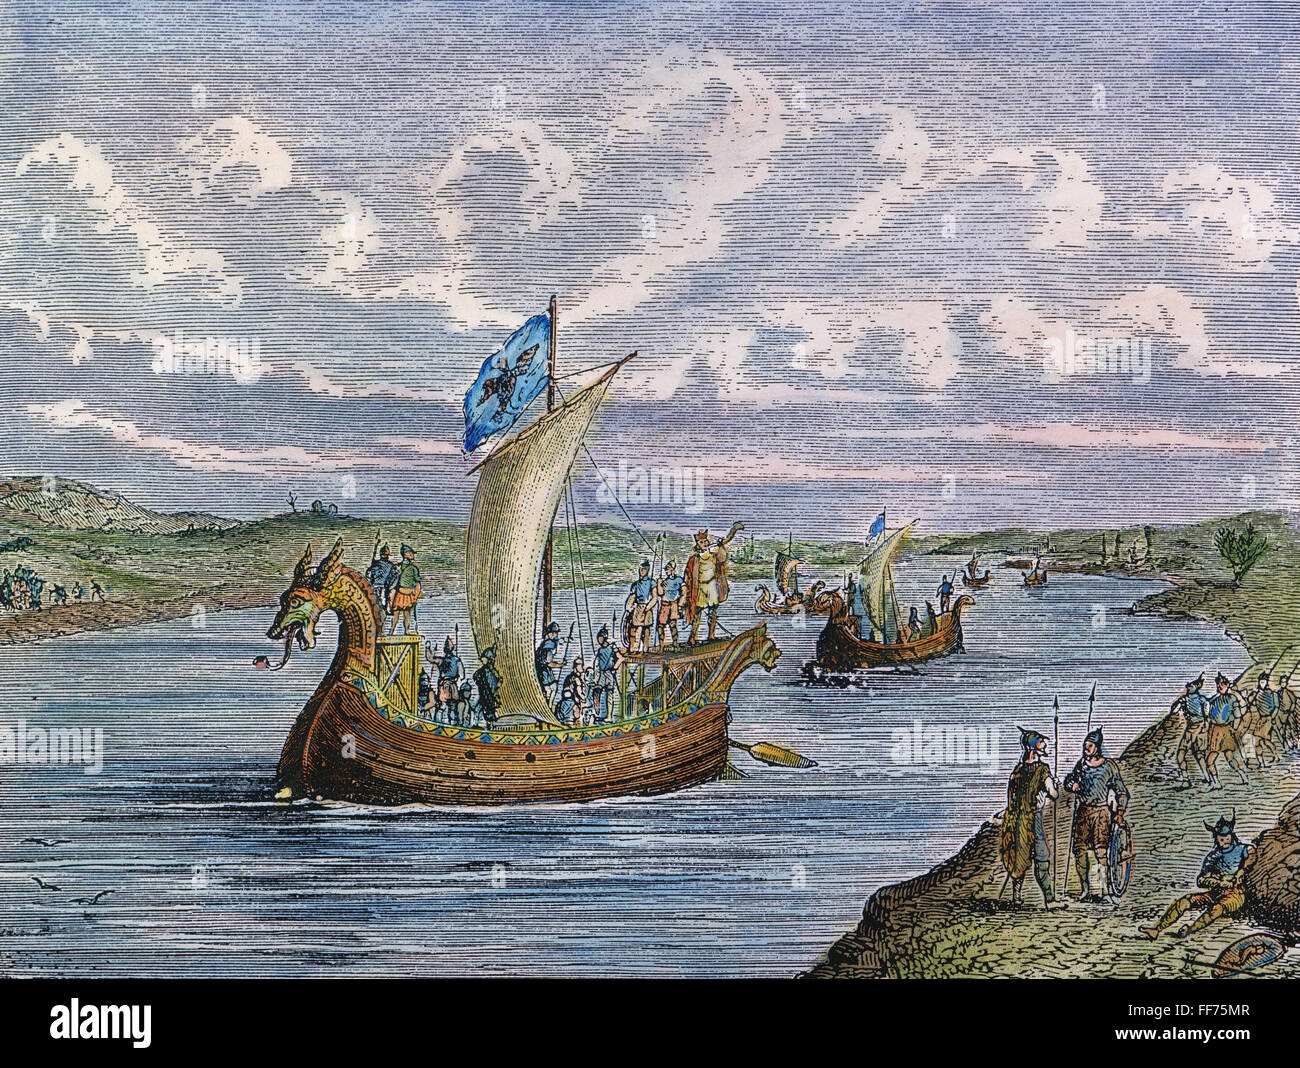 Les navires vikings, 1000 A.D. /nNorse navigators dans la baie de Narragansett (Rhode Island) moderne. La gravure sur bois, cuisine américaine, 19e siècle. Banque D'Images